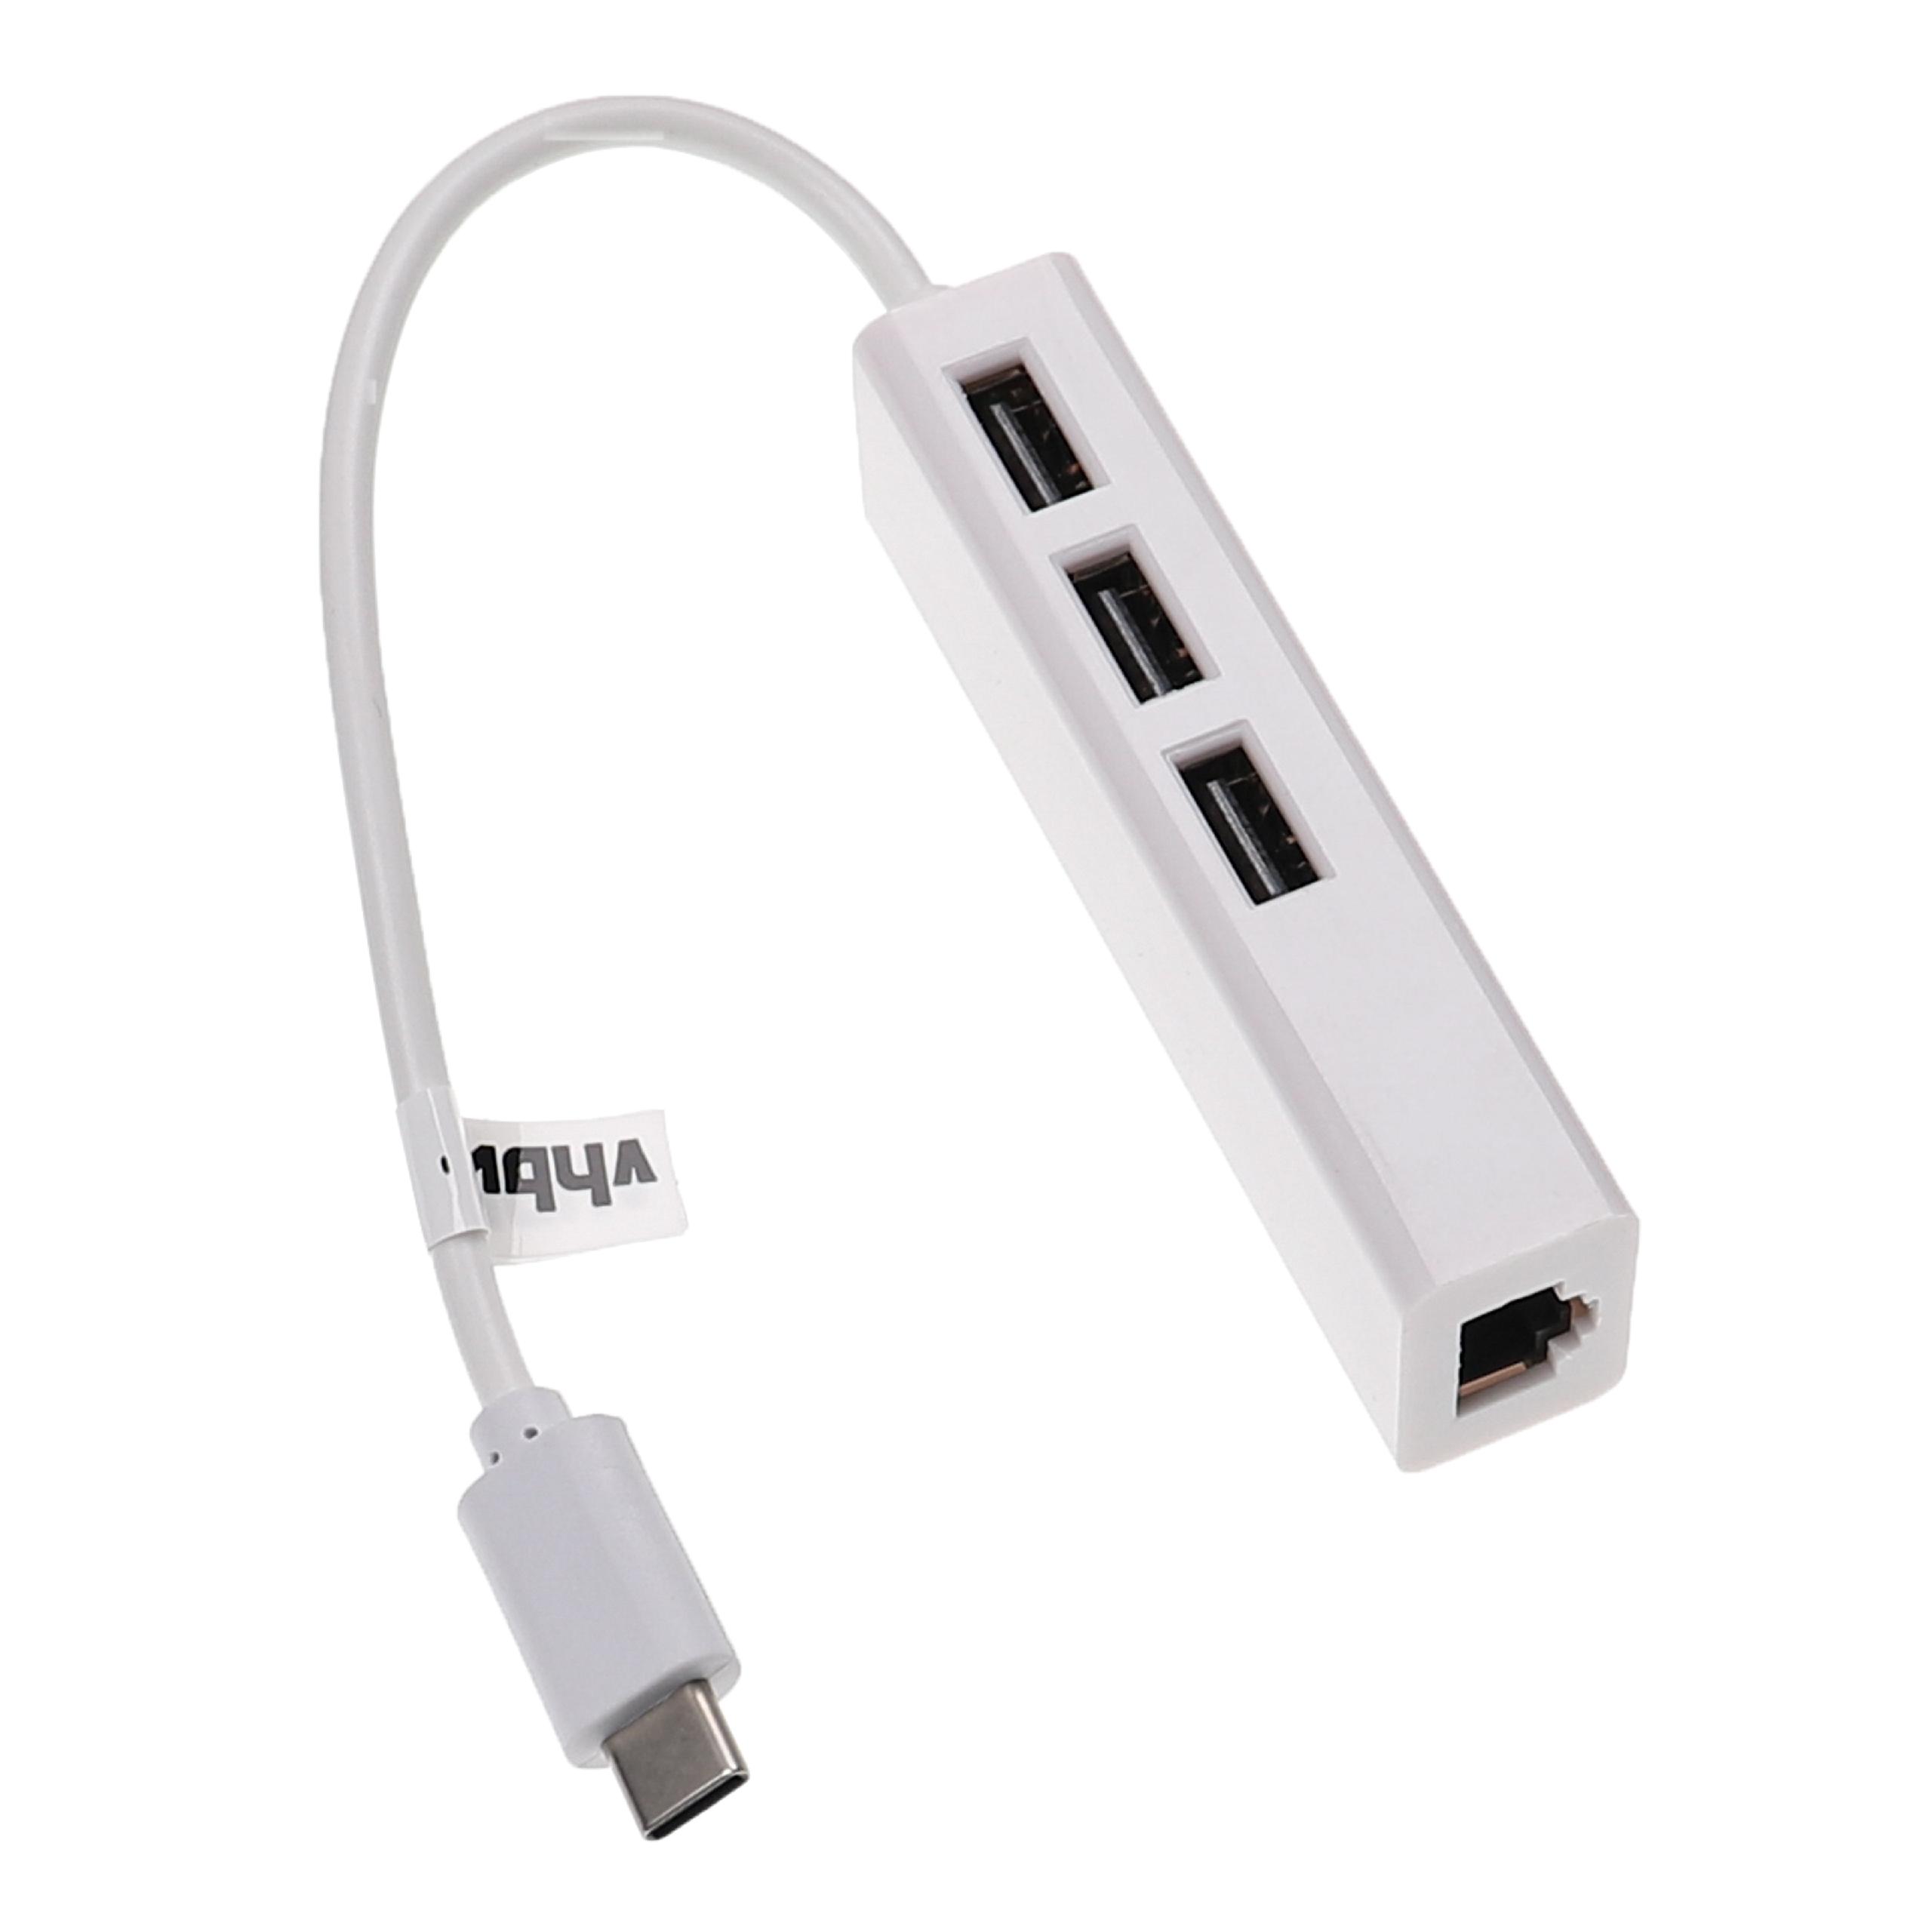 Adapter do internetu USB C (m) na RJ45 (ż) do laptopa, komputera + 3 dodtkowe gniazda USB A